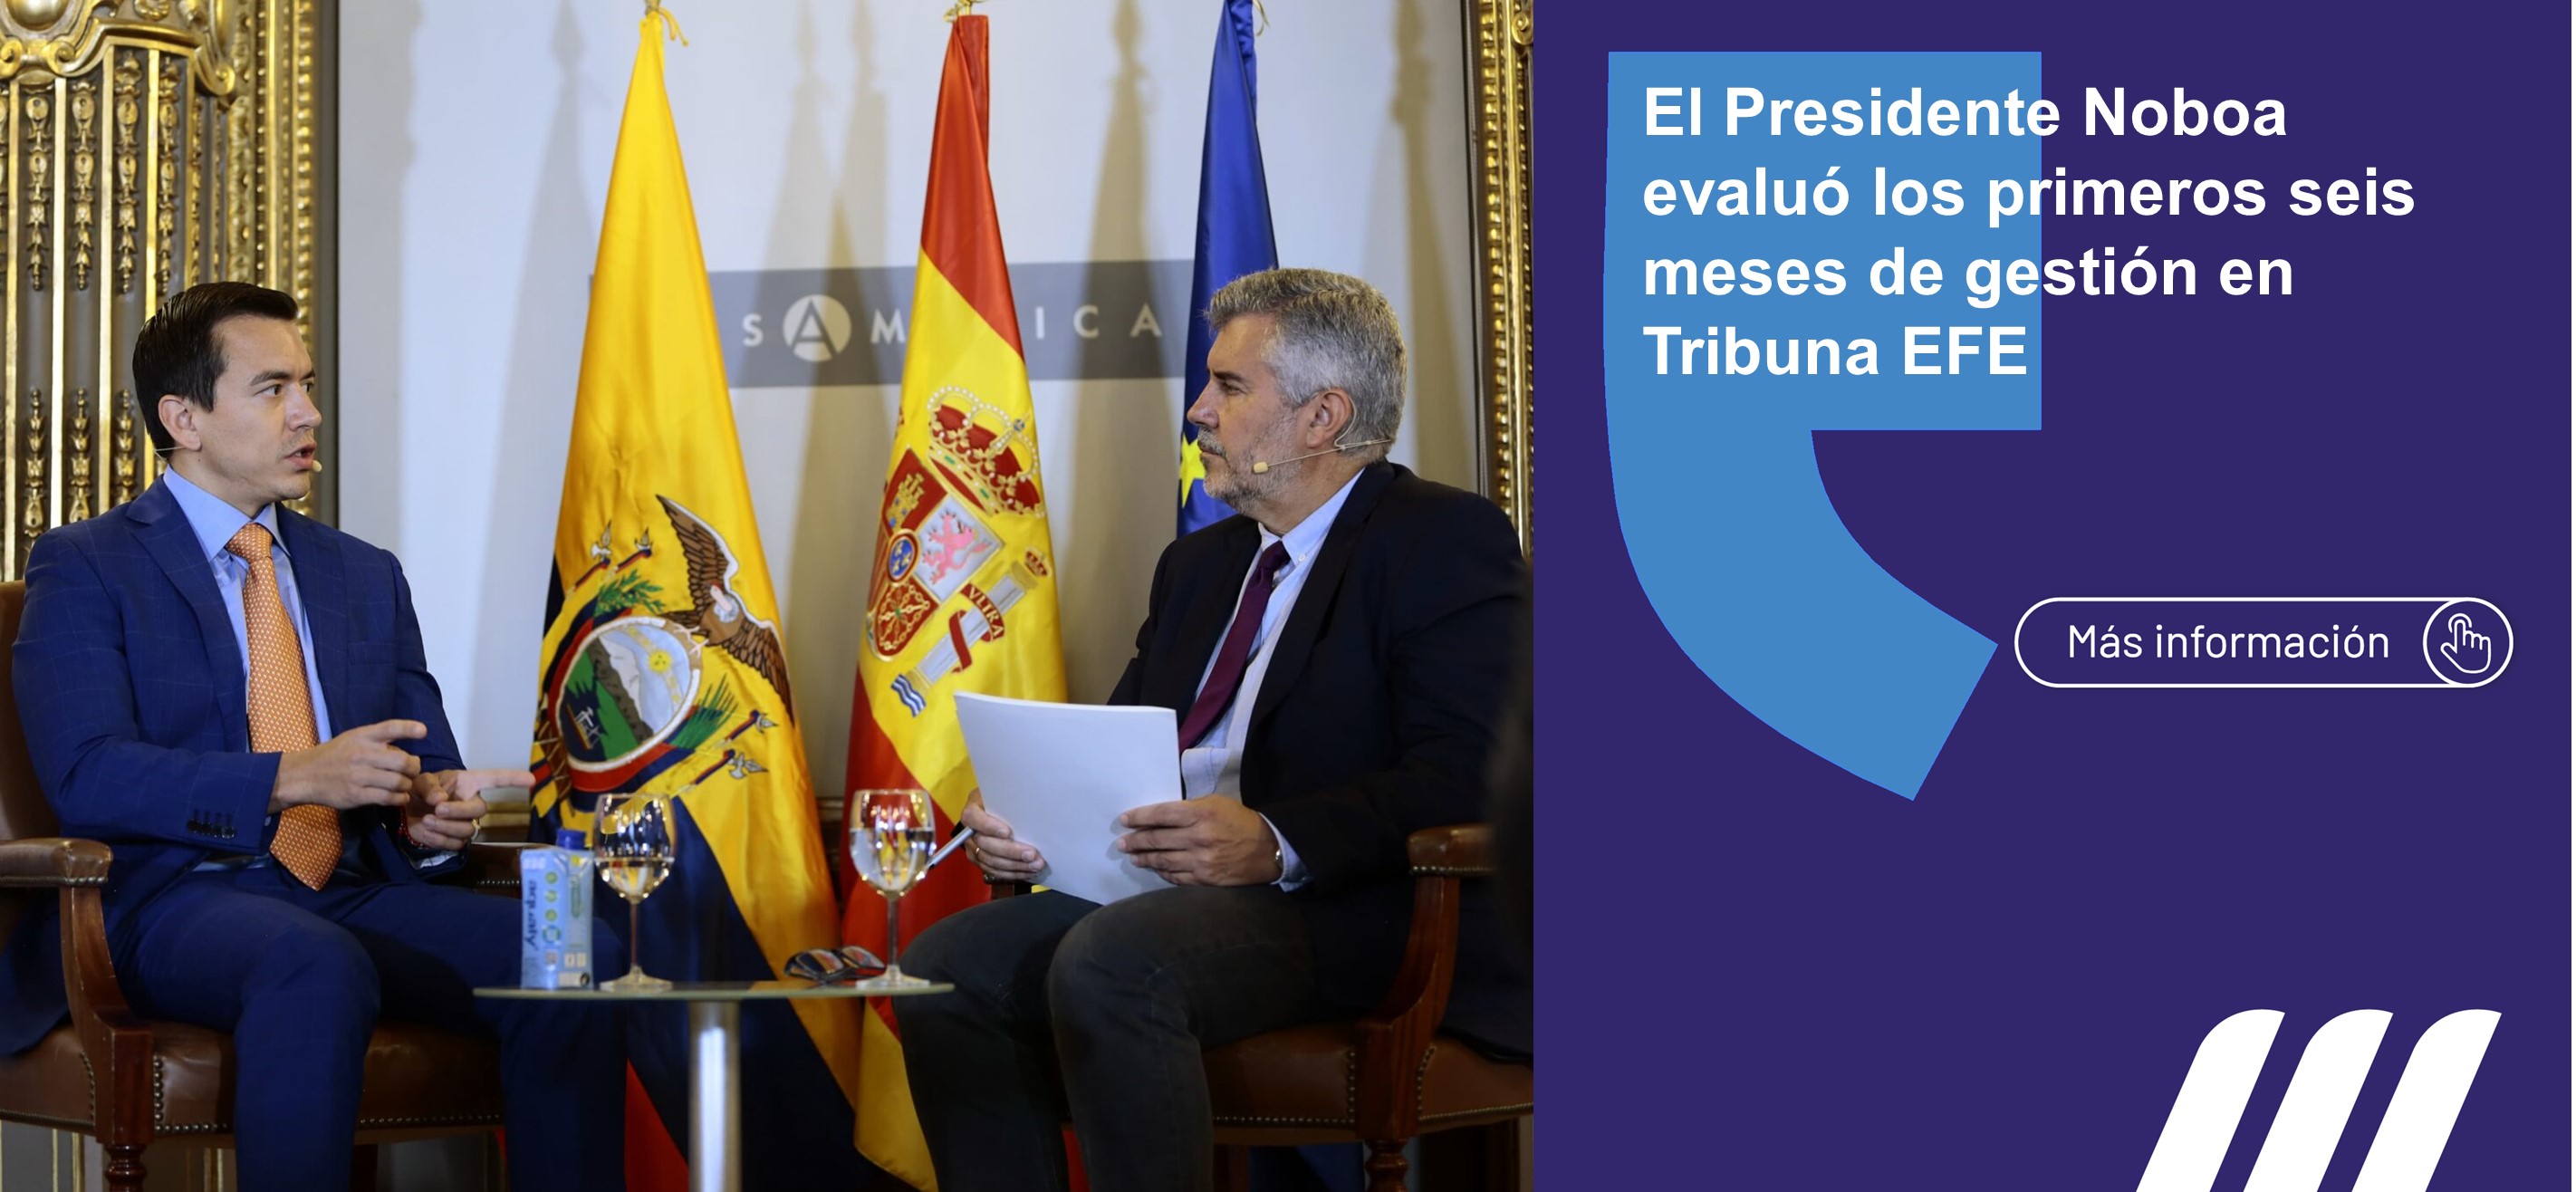 El presidente de la República, Daniel Noboa Azin, dialogó en Tribuna EFE acerca de los primeros seis meses de gobierno.